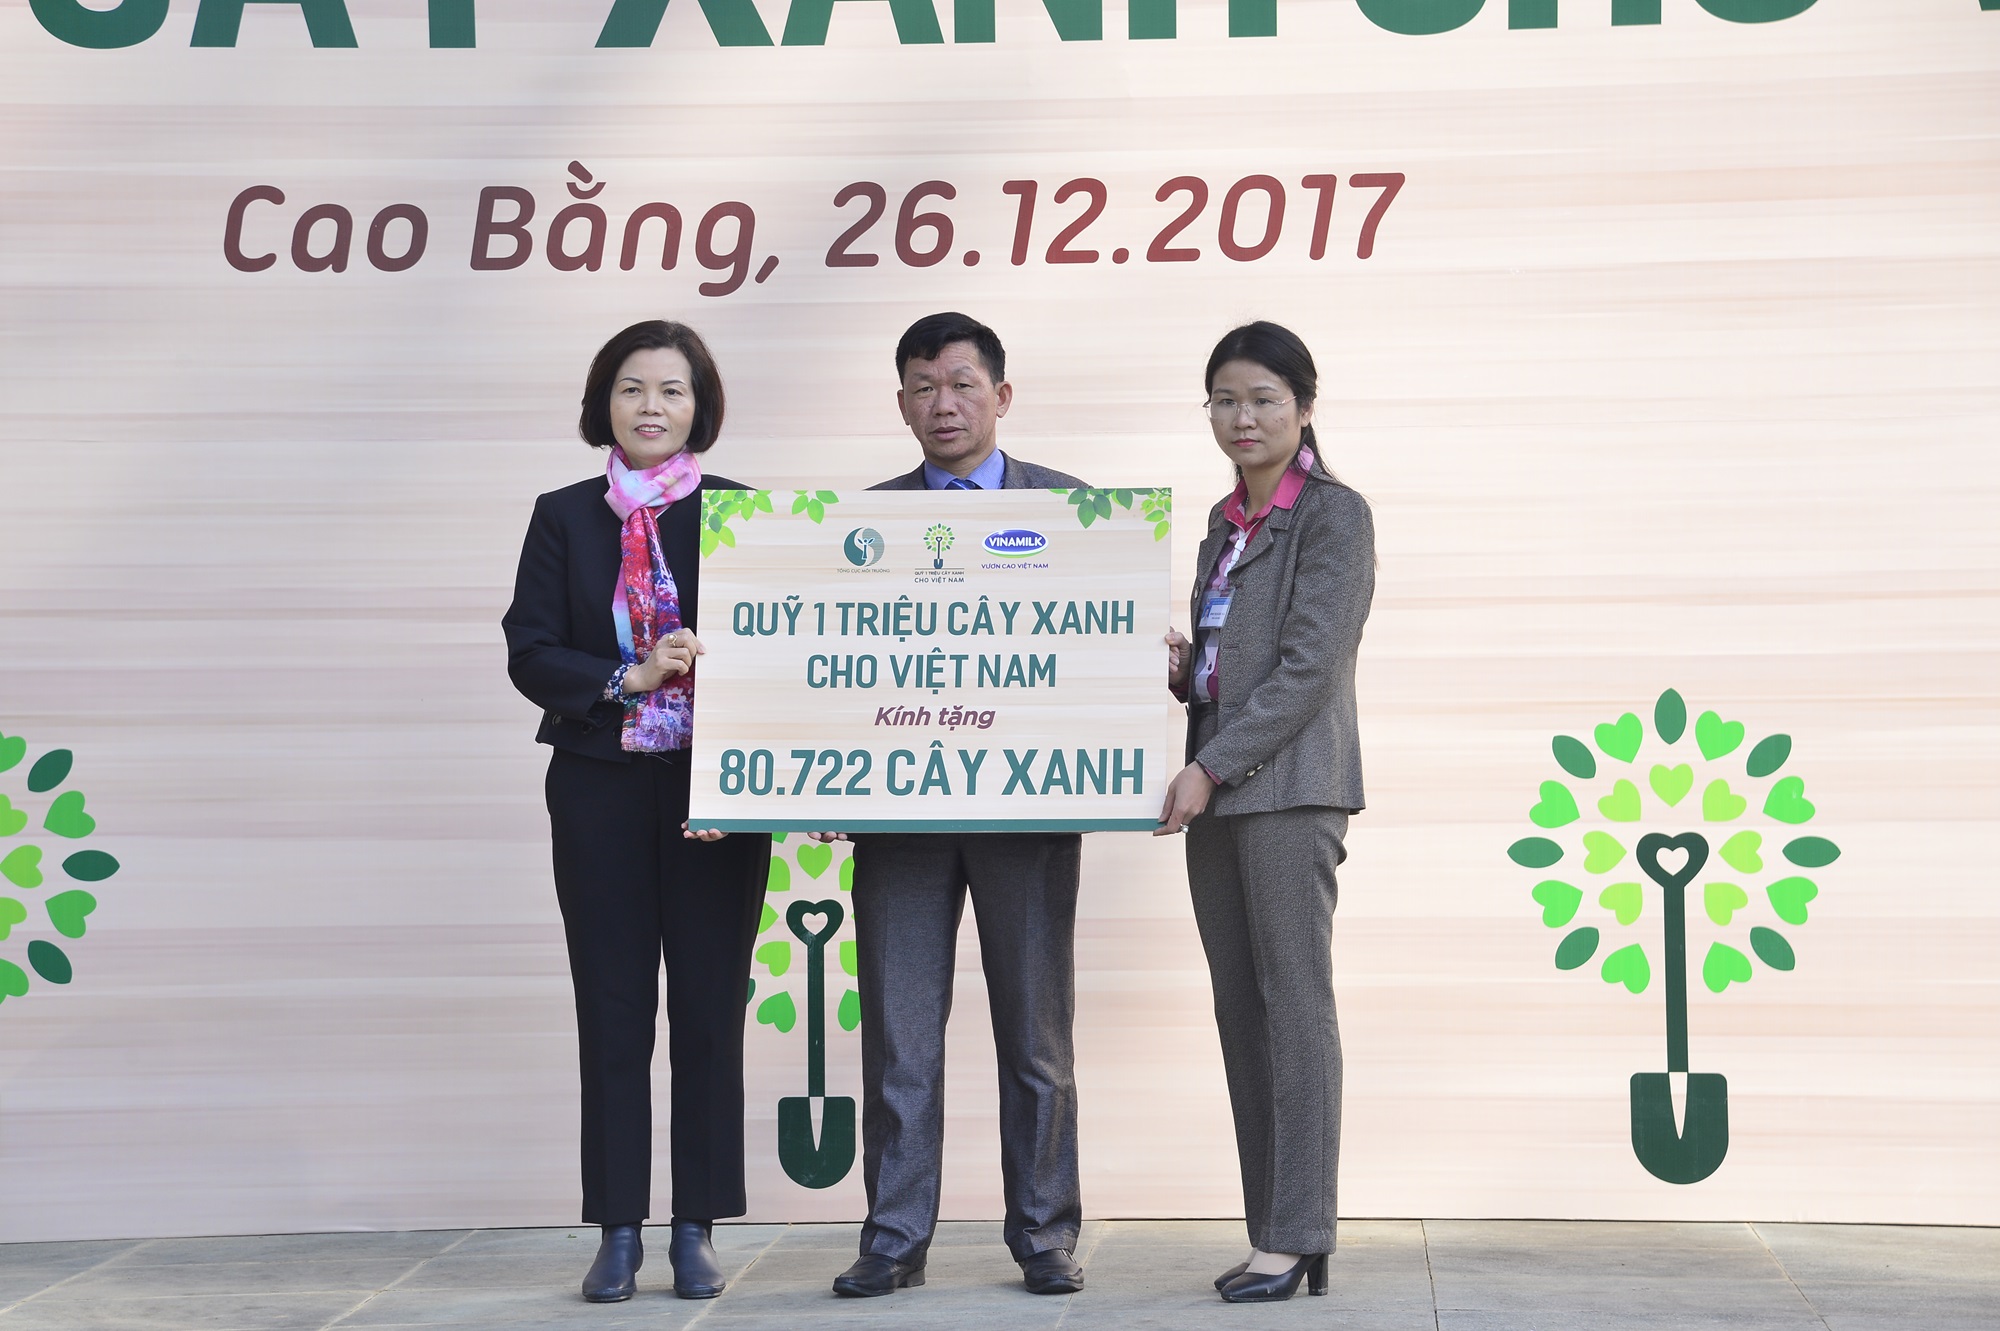 Quỹ 1 triệu cây xanh của Vinamilk ngược đến Cao Bằng